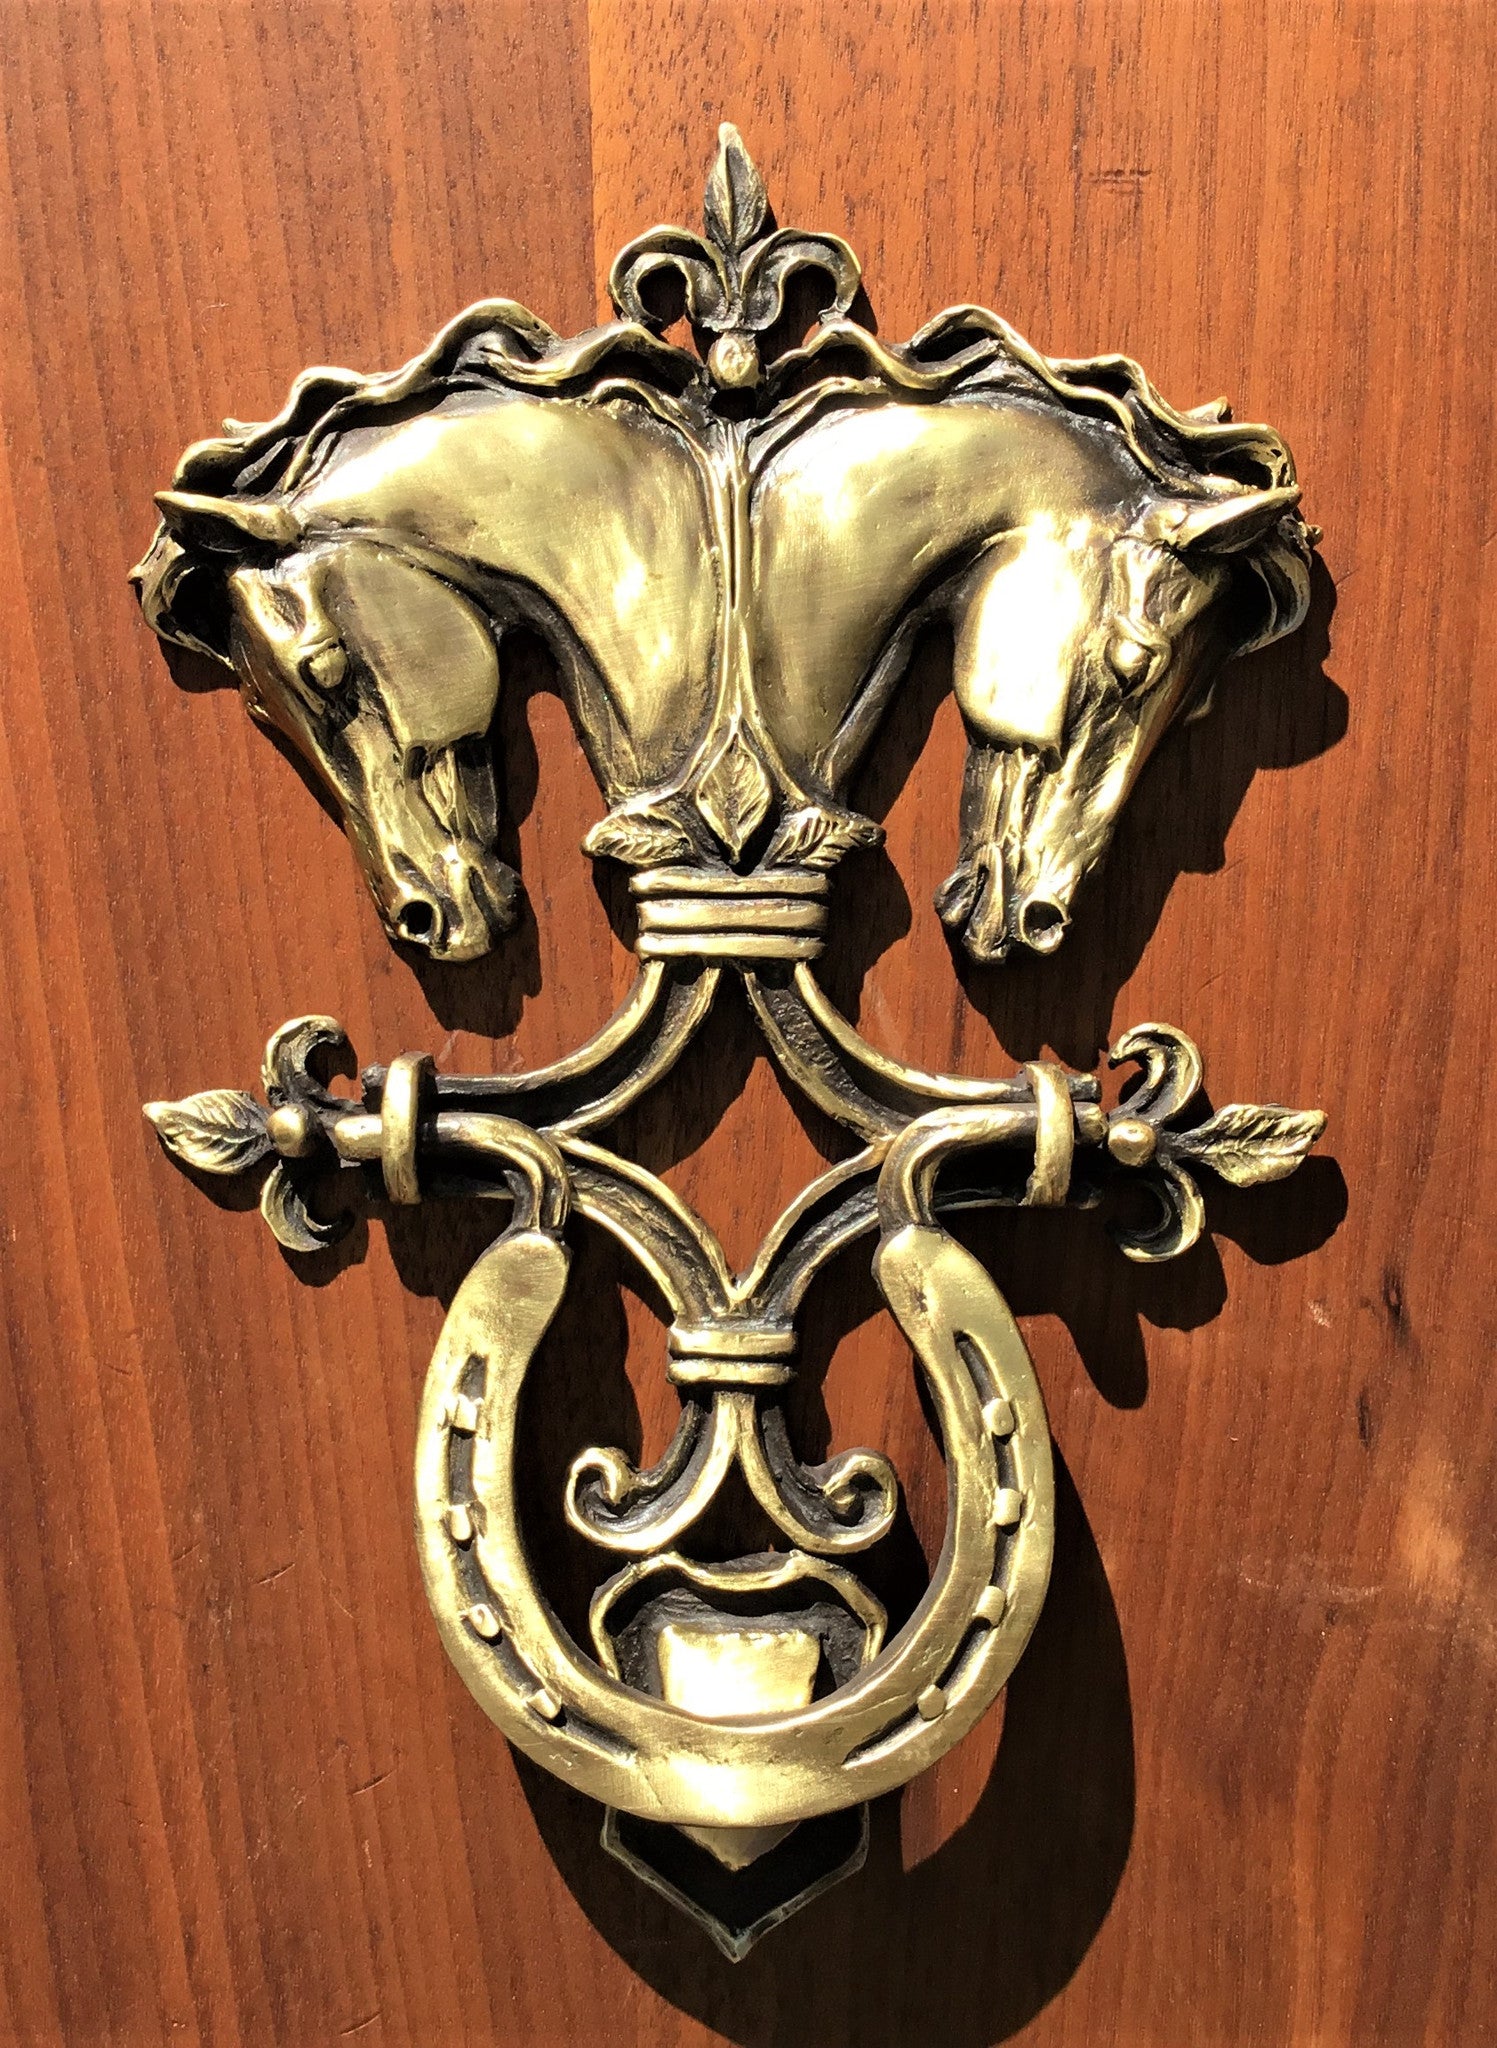 Horse head door knocker with classical design